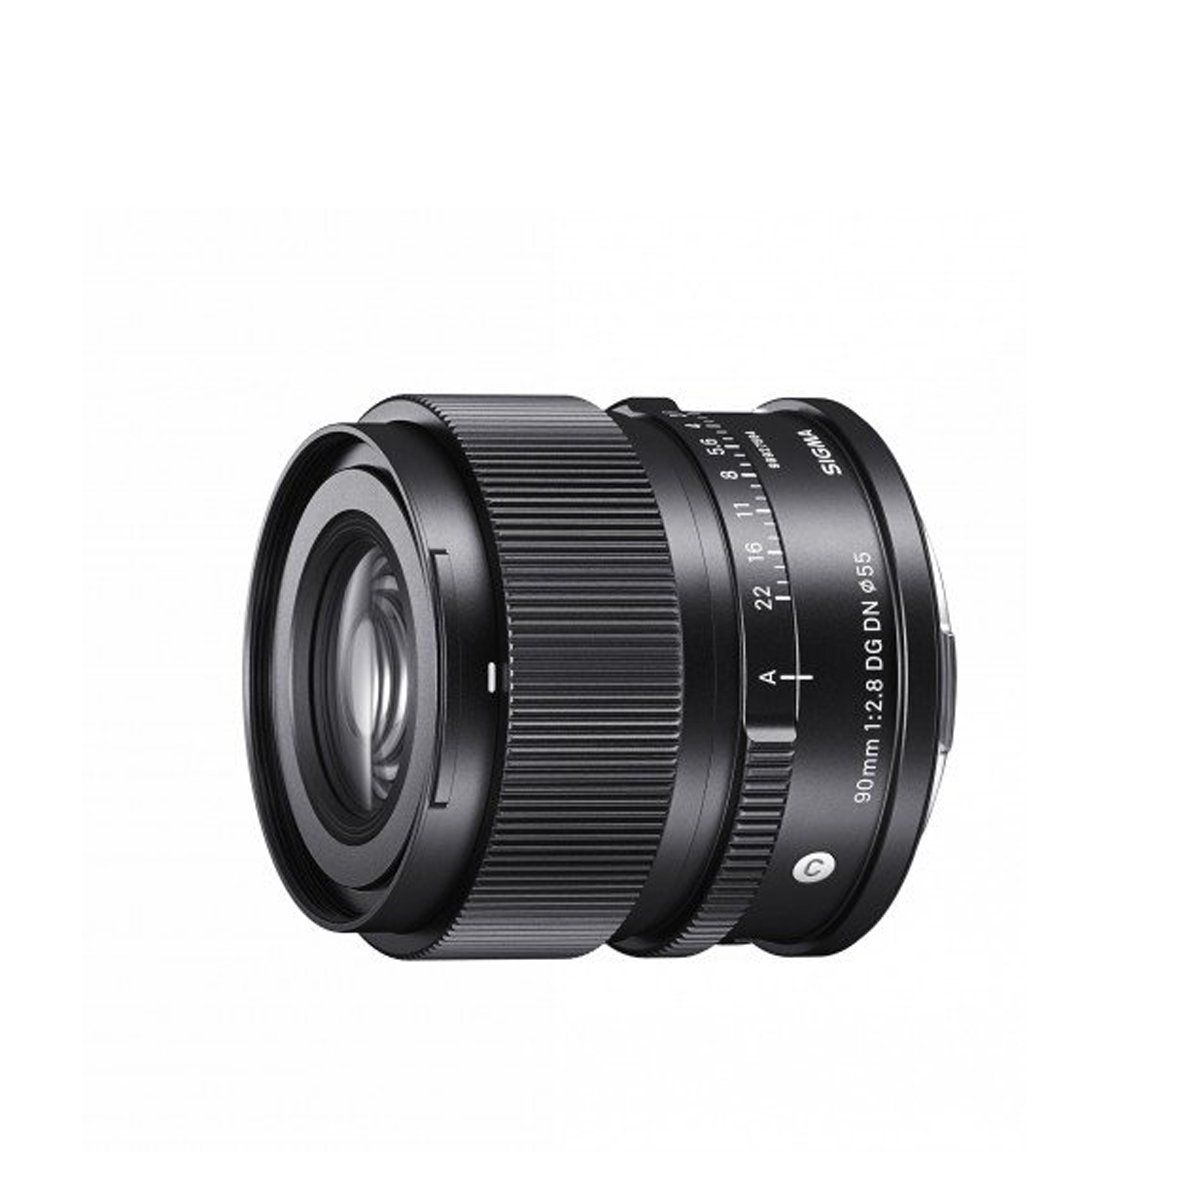  Ống kính Sigma 90mm f/2.8 DG DN (For Sony E) - Chính hãng 